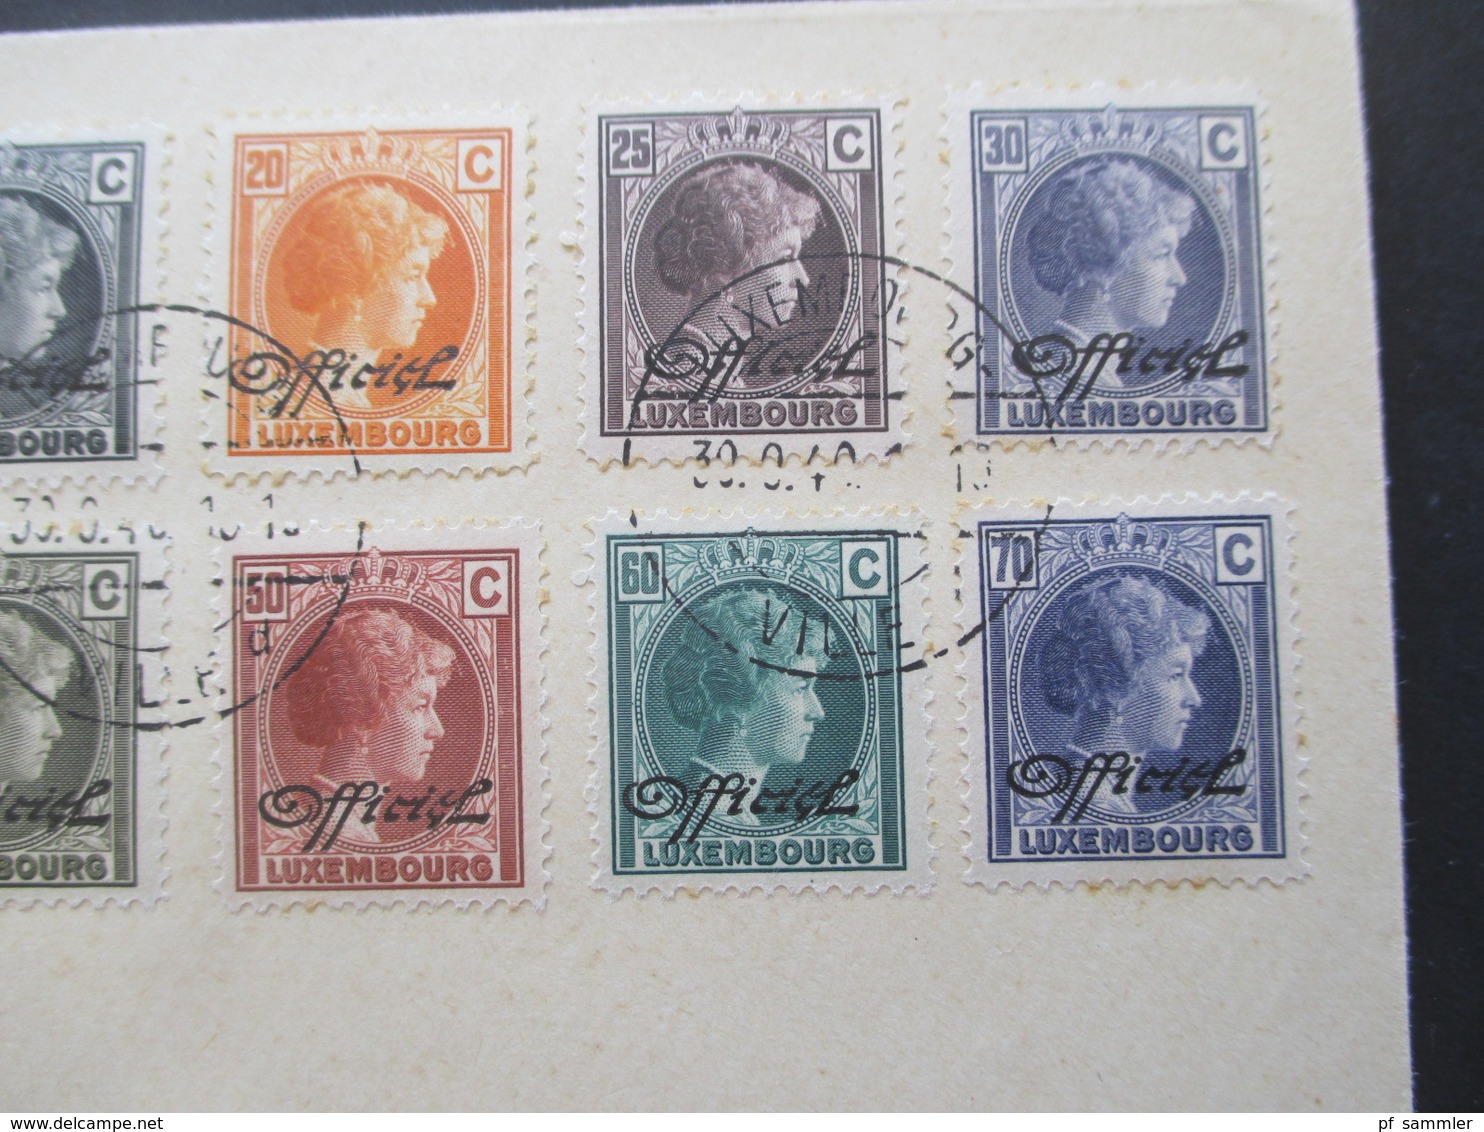 Luxemburg 1940 Dienstmarken Freimarken Mit Aufdruck Officiel 18 Werte Auf 2 Blano Umschlägen 5 Cent - 1 3/4 Fr. - Officials